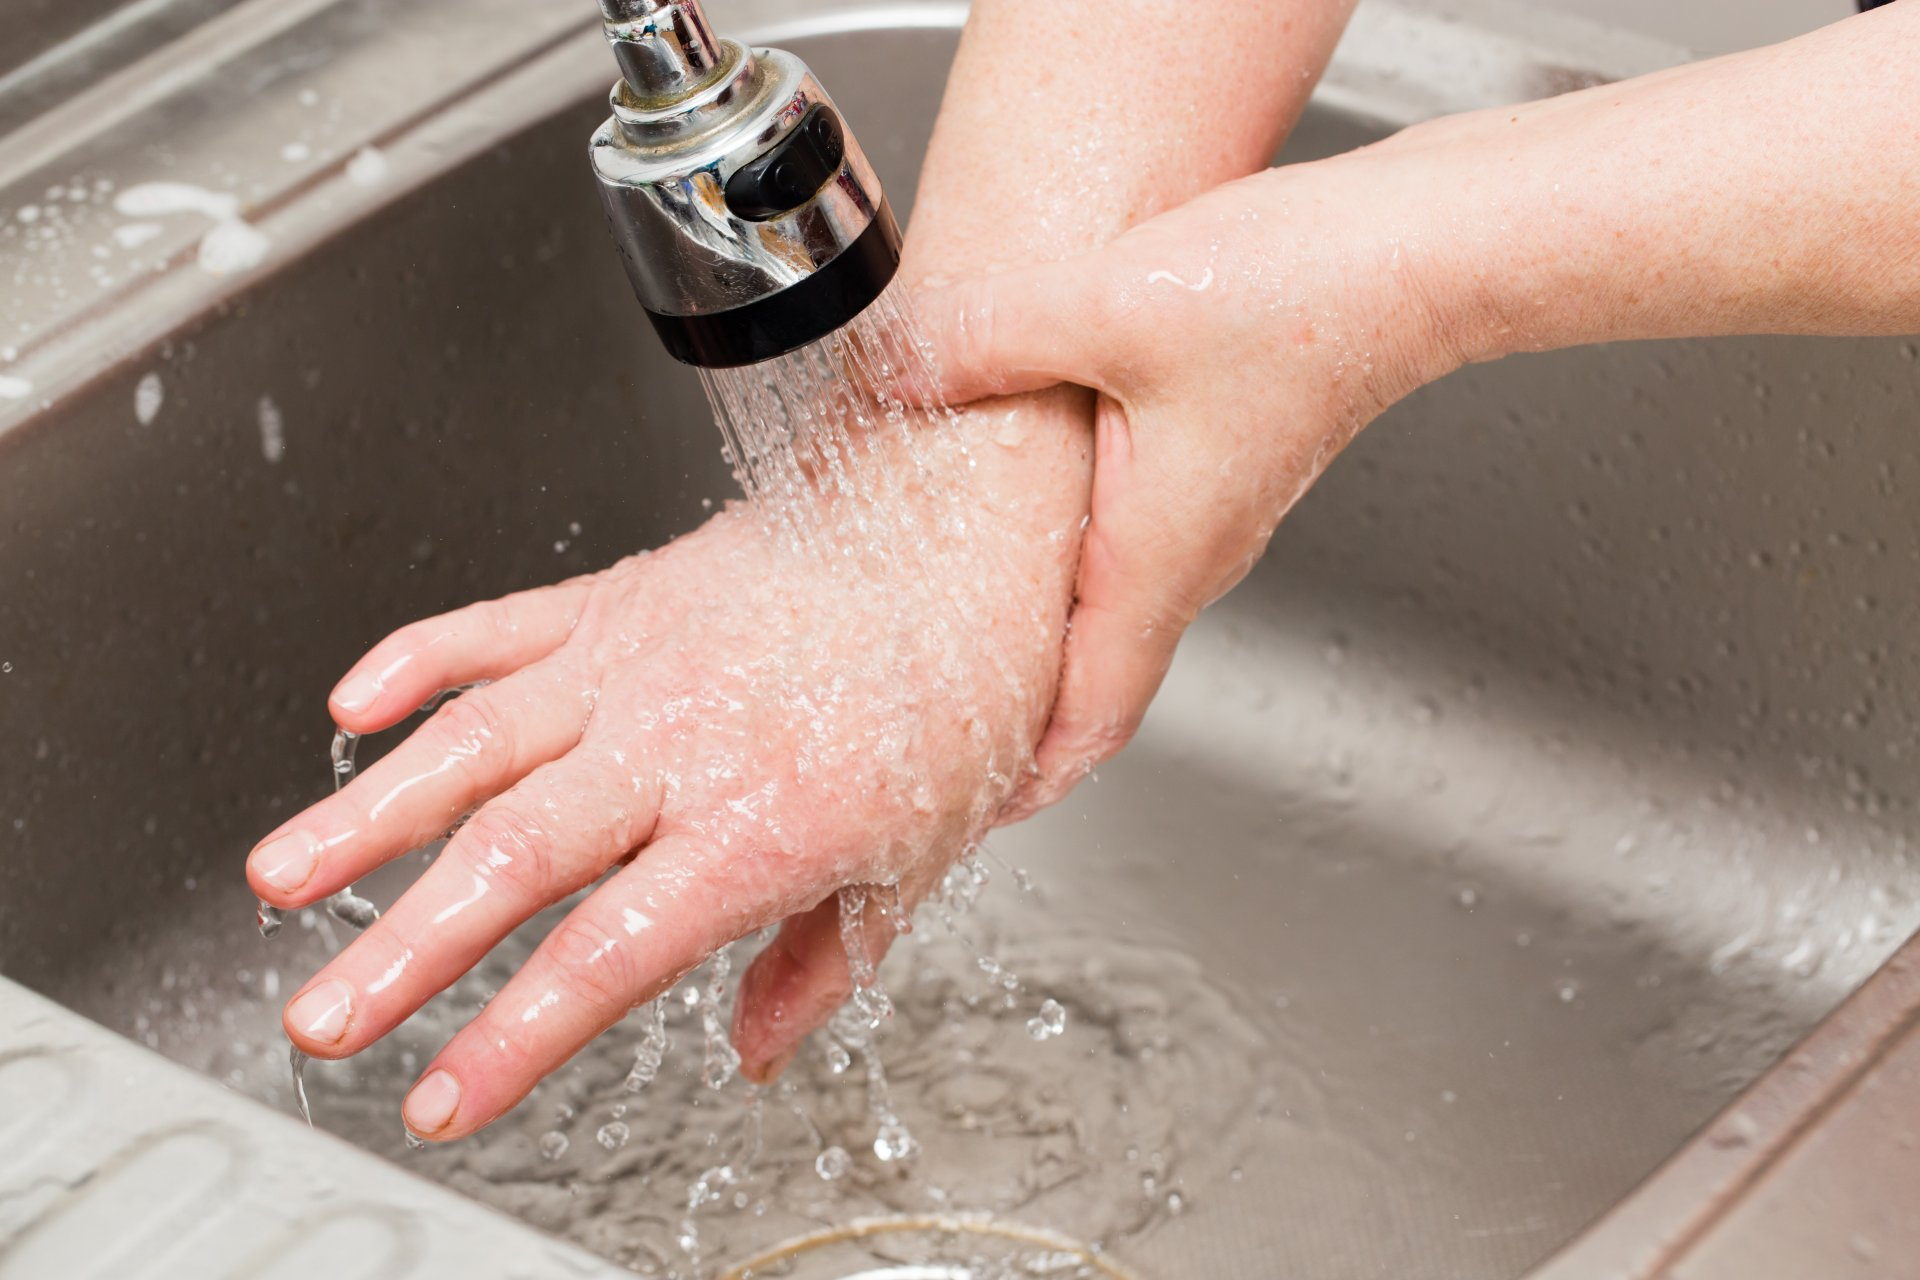 Окр моет руки. Руки под краном с водой. Мытье рук под краном. Руки под струей воды. Руки под струей воды горячей.